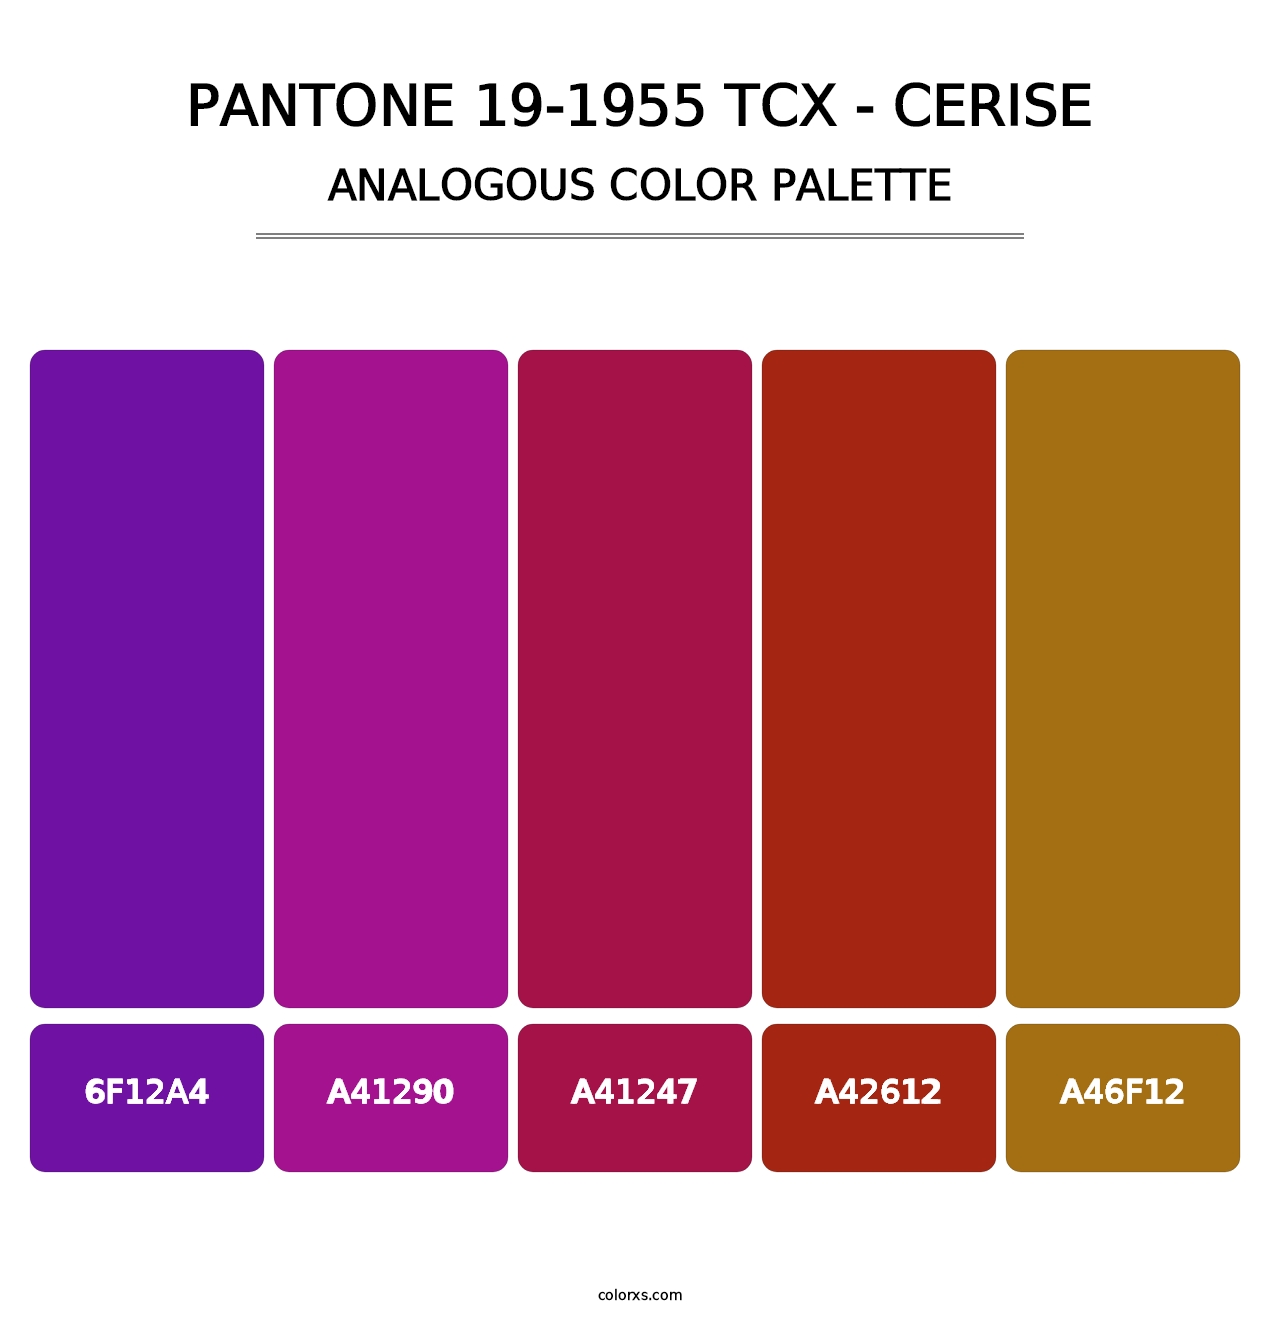 PANTONE 19-1955 TCX - Cerise - Analogous Color Palette